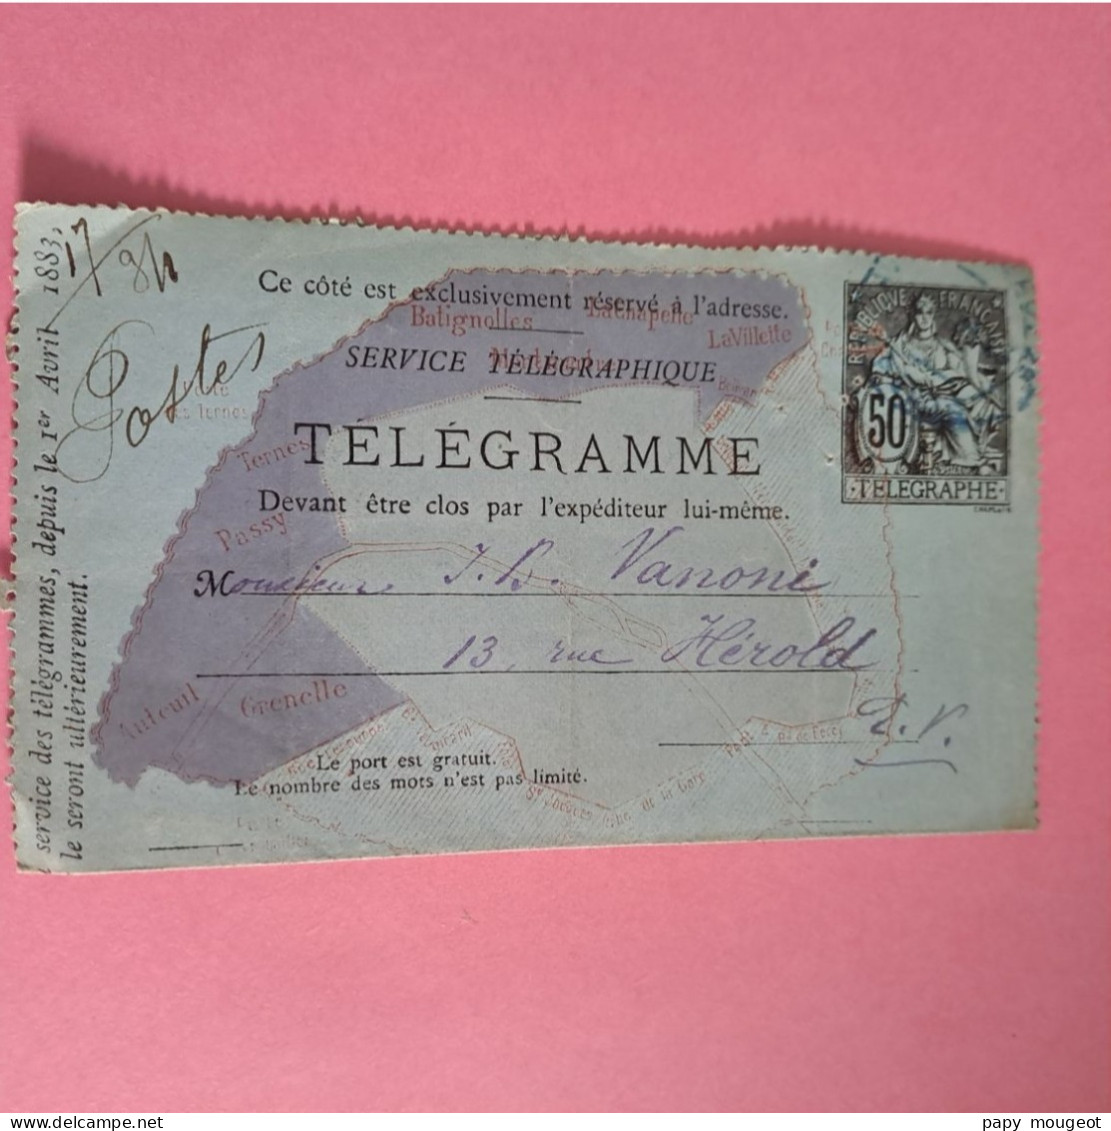 Pneumatique 2528 CLPP 50c. (1883) R Plan De Paris Sans Teinte Violette Cote 2024 9€ - Pneumatic Post